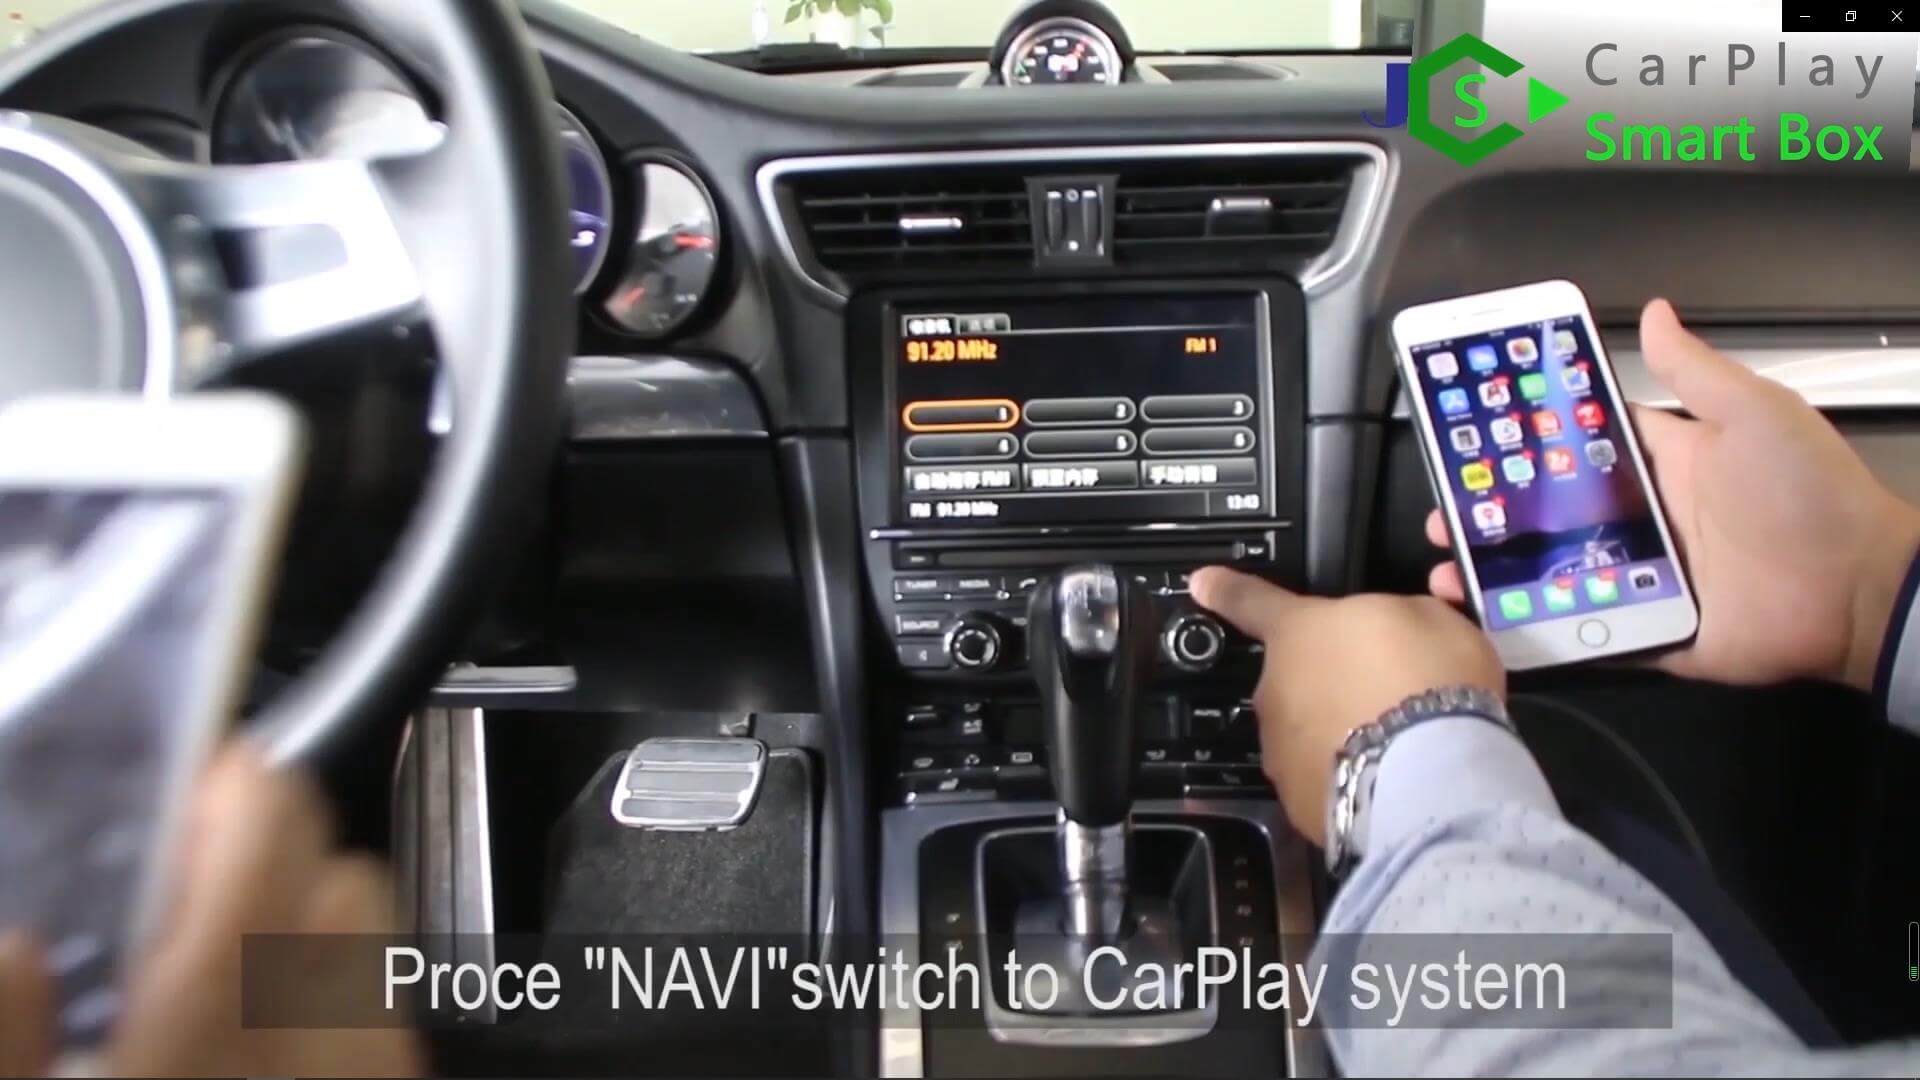 21. Premere l'interruttore 'NAVI' per accedere al sistema CarPlay - Smart Box Apple CarPlay wireless per unità principale Porsche 911 PCM3.1 - Smart Box CarPlay